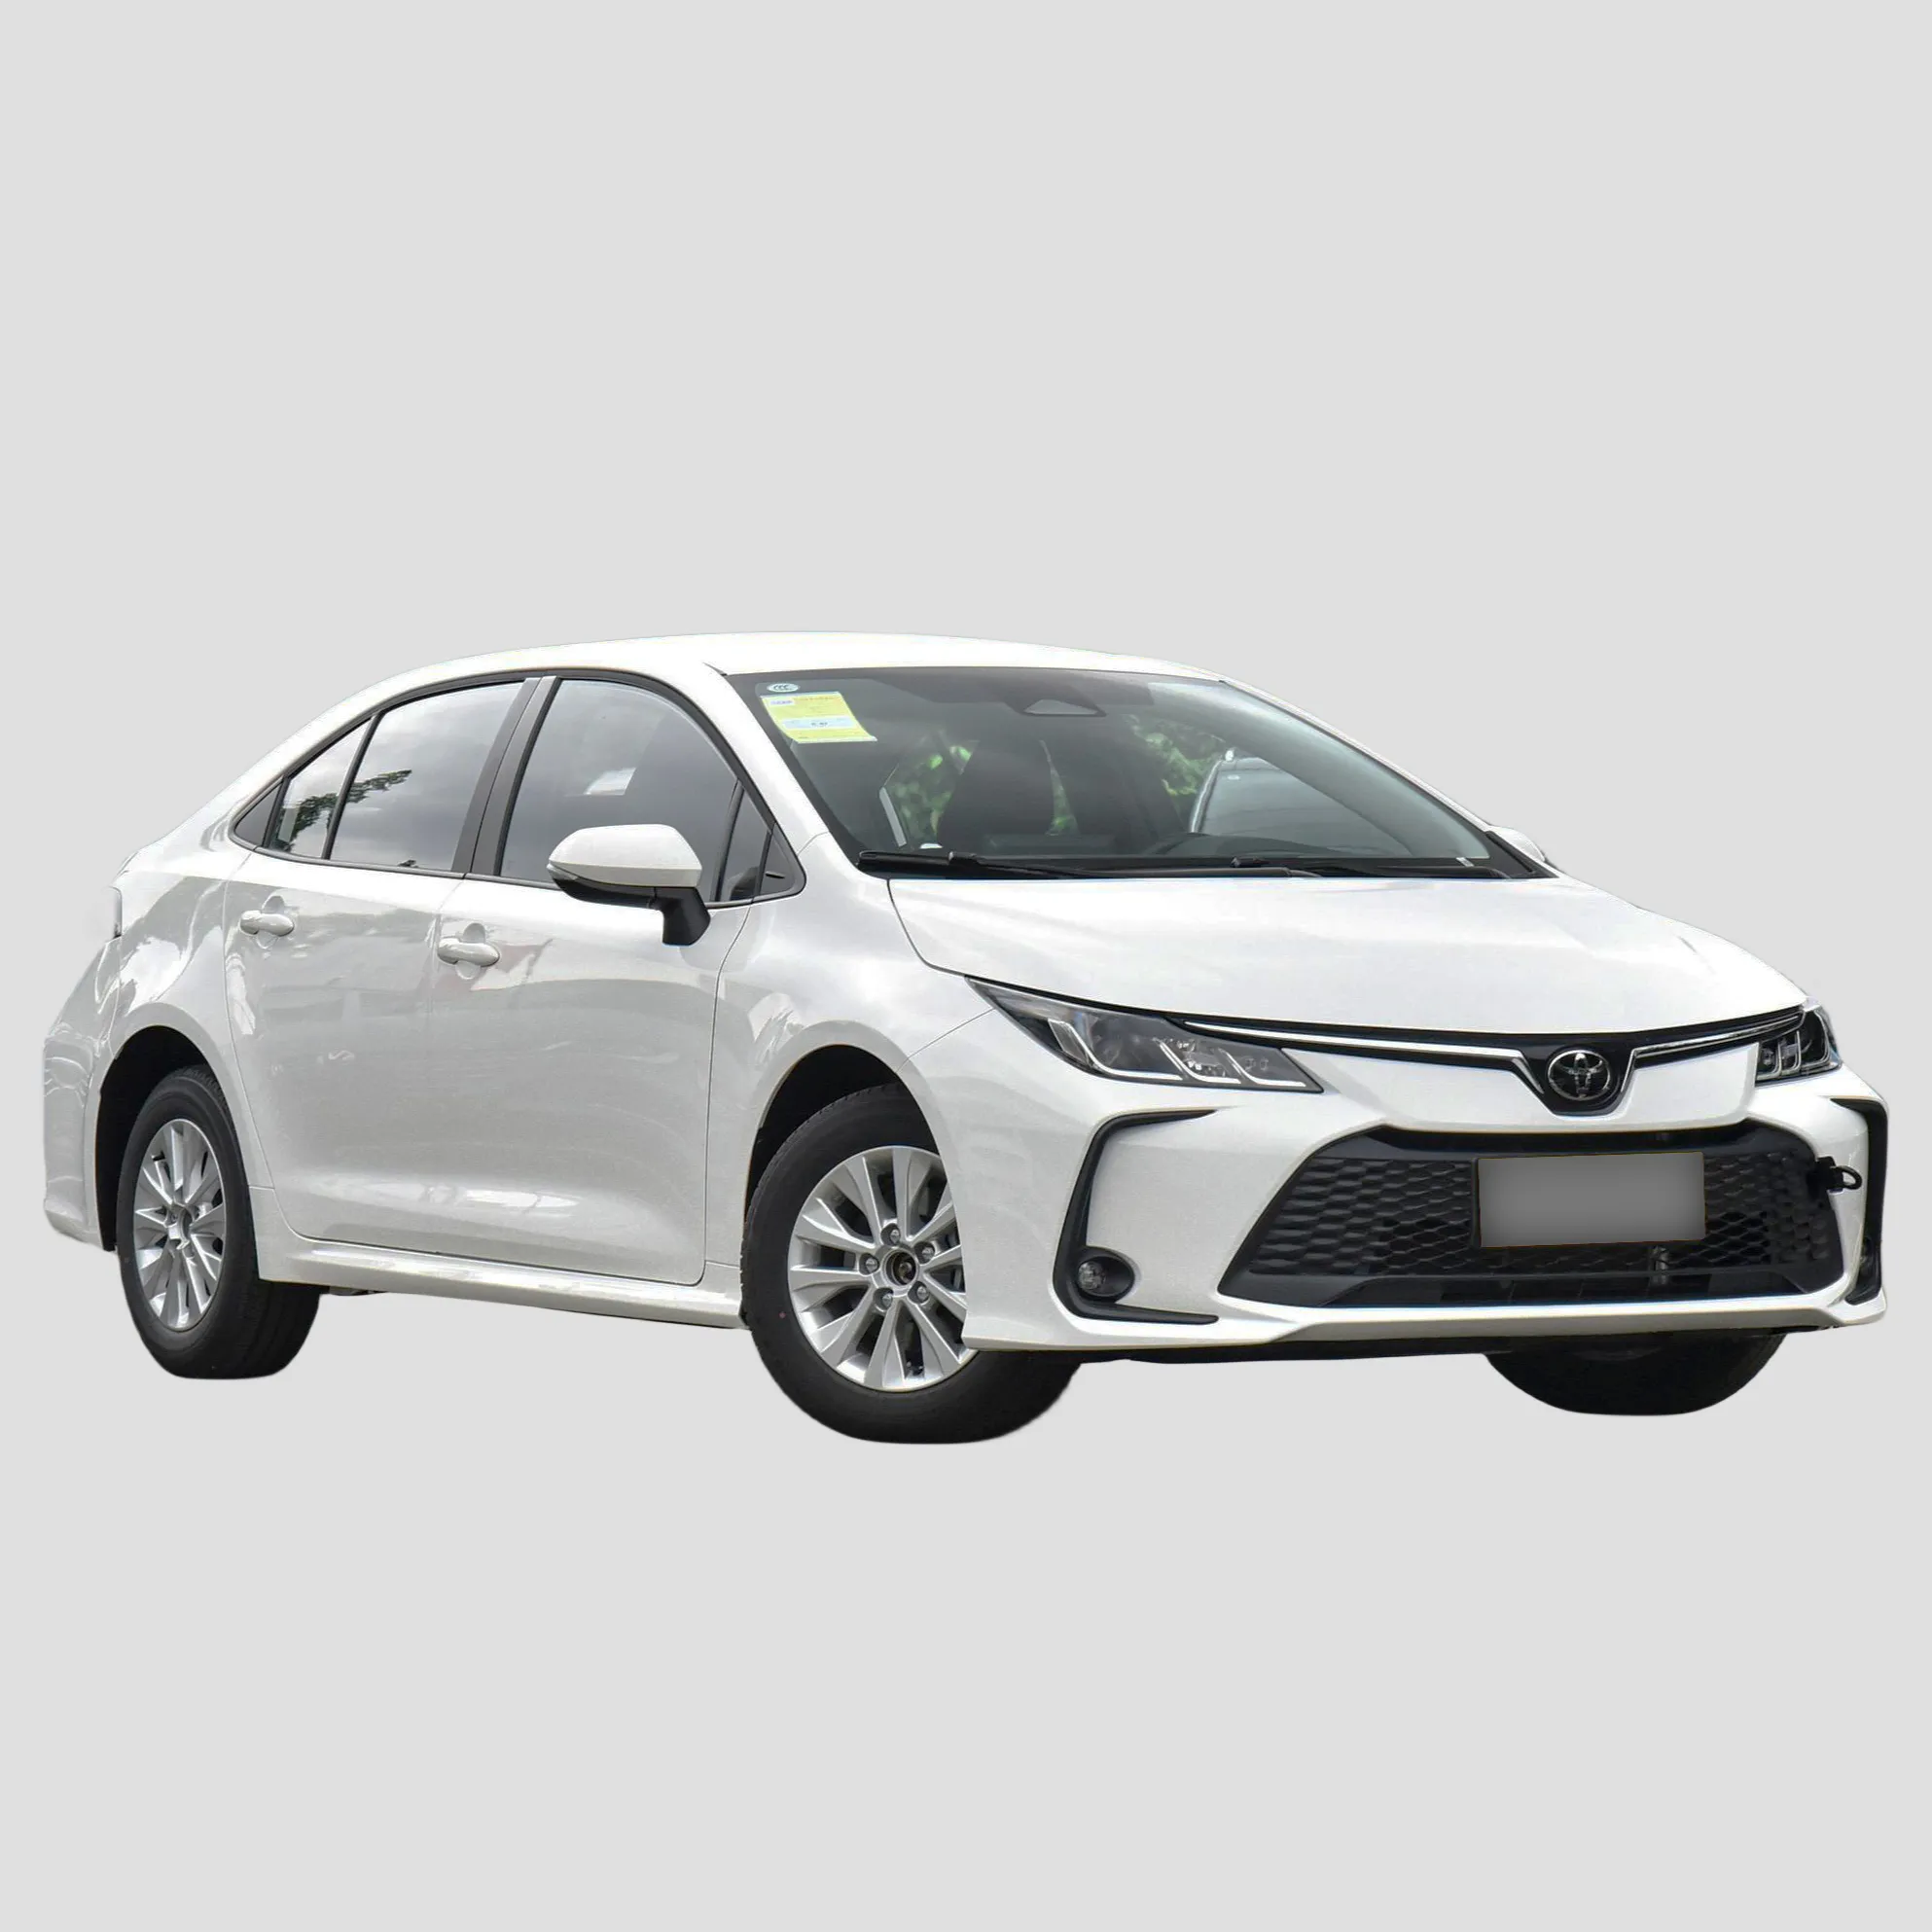 Toyota Corolla 1.5L doğal aspire Sedan yeni ve satılık kullanılan 2022 2023 çin ucuz fiyat Toyota Corolla araçlar